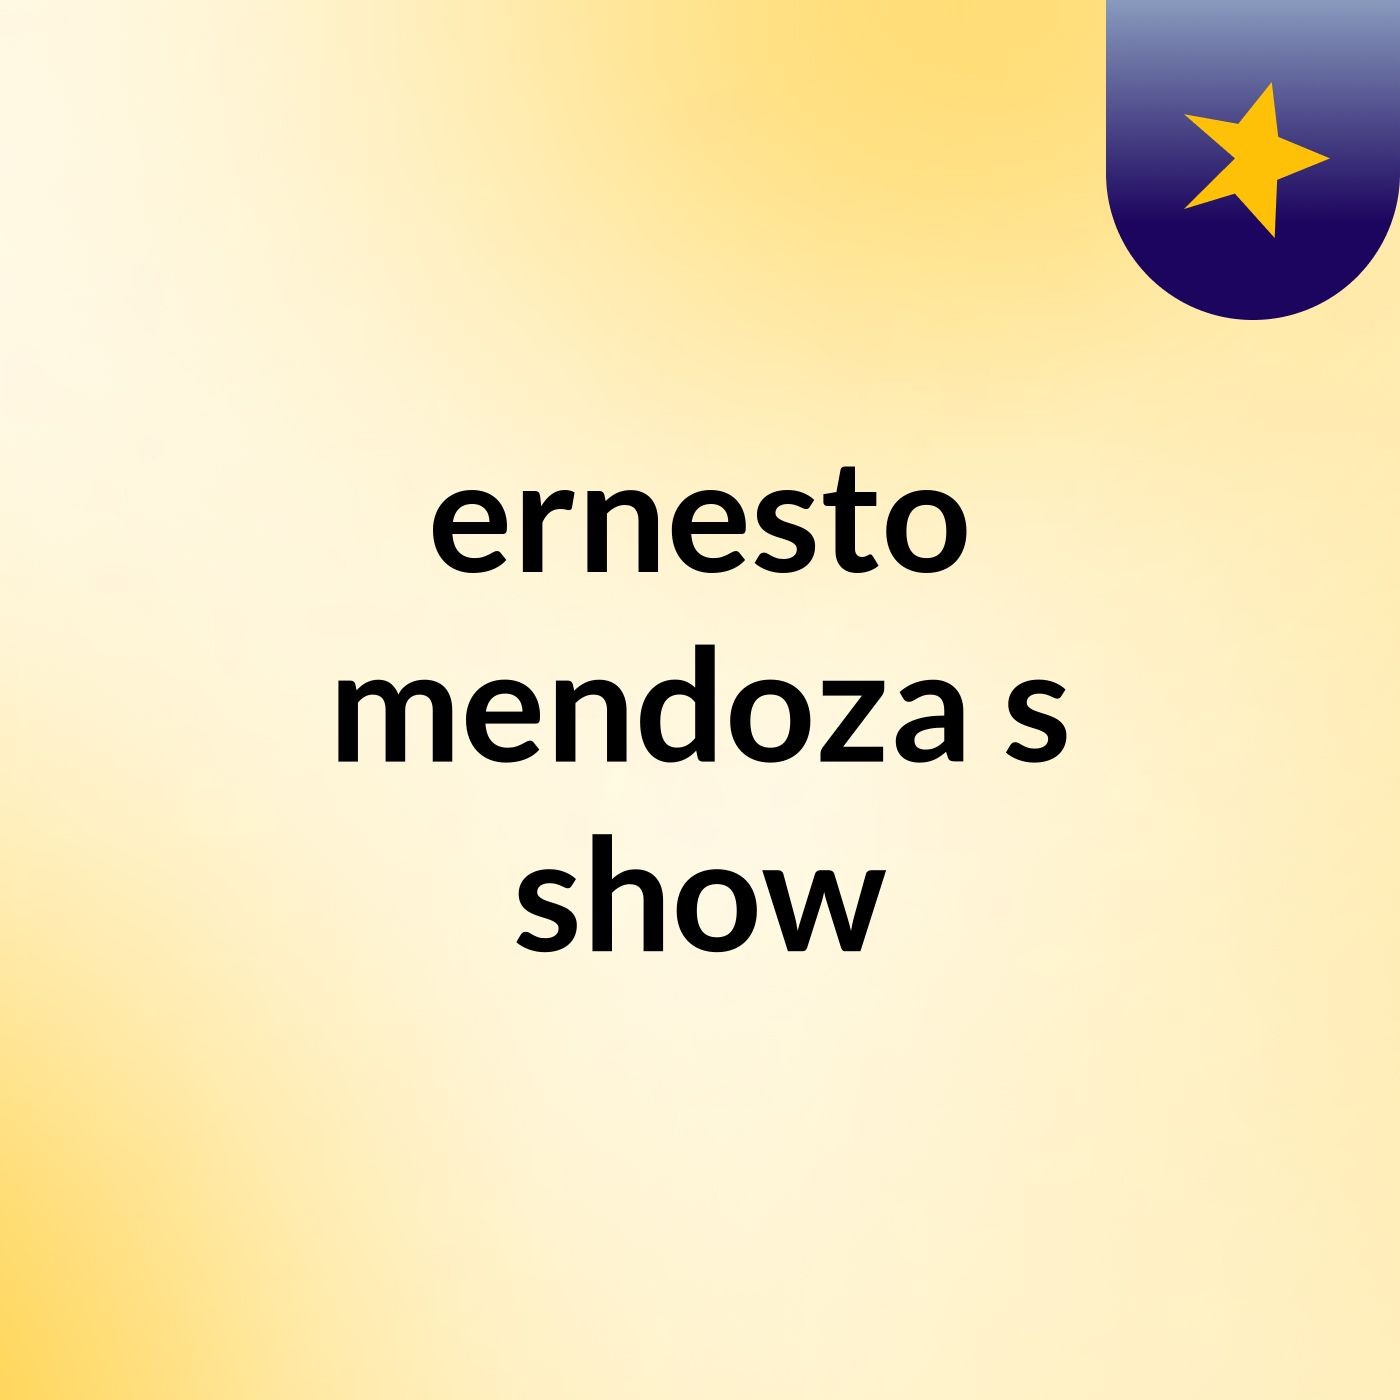 ernesto mendoza's show